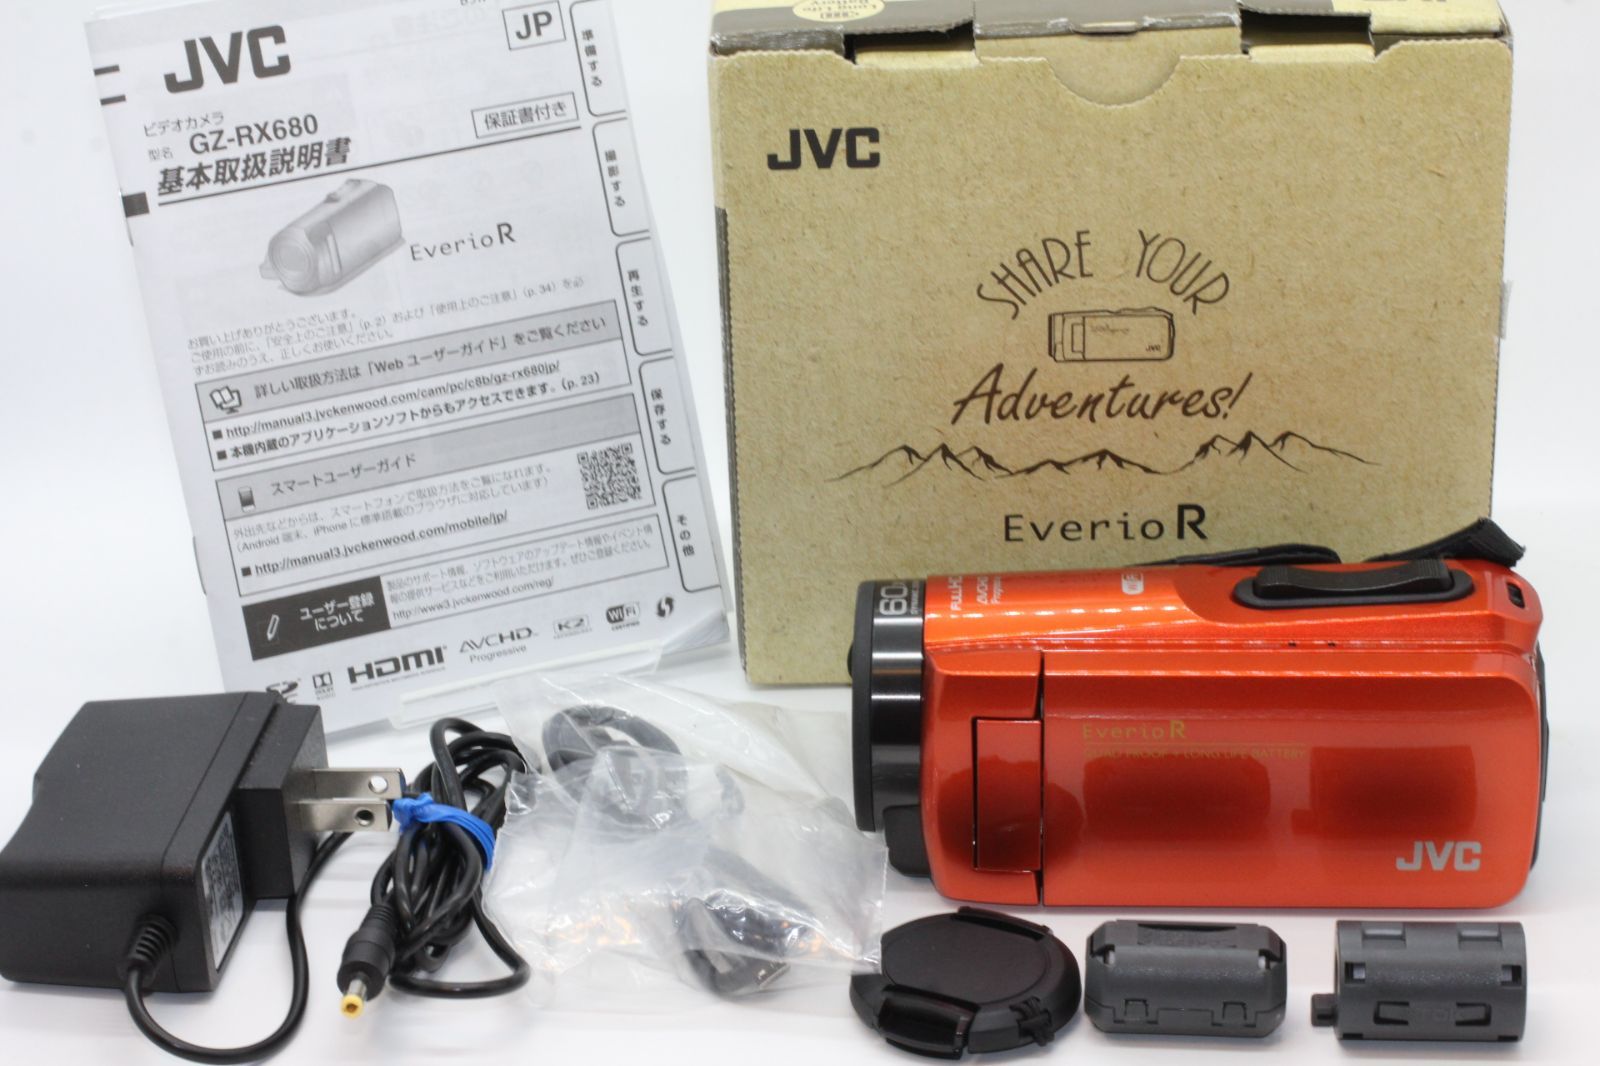 JVC ビデオカメラ KENWOOD Everio R GZ-RX680-D - ビデオカメラ